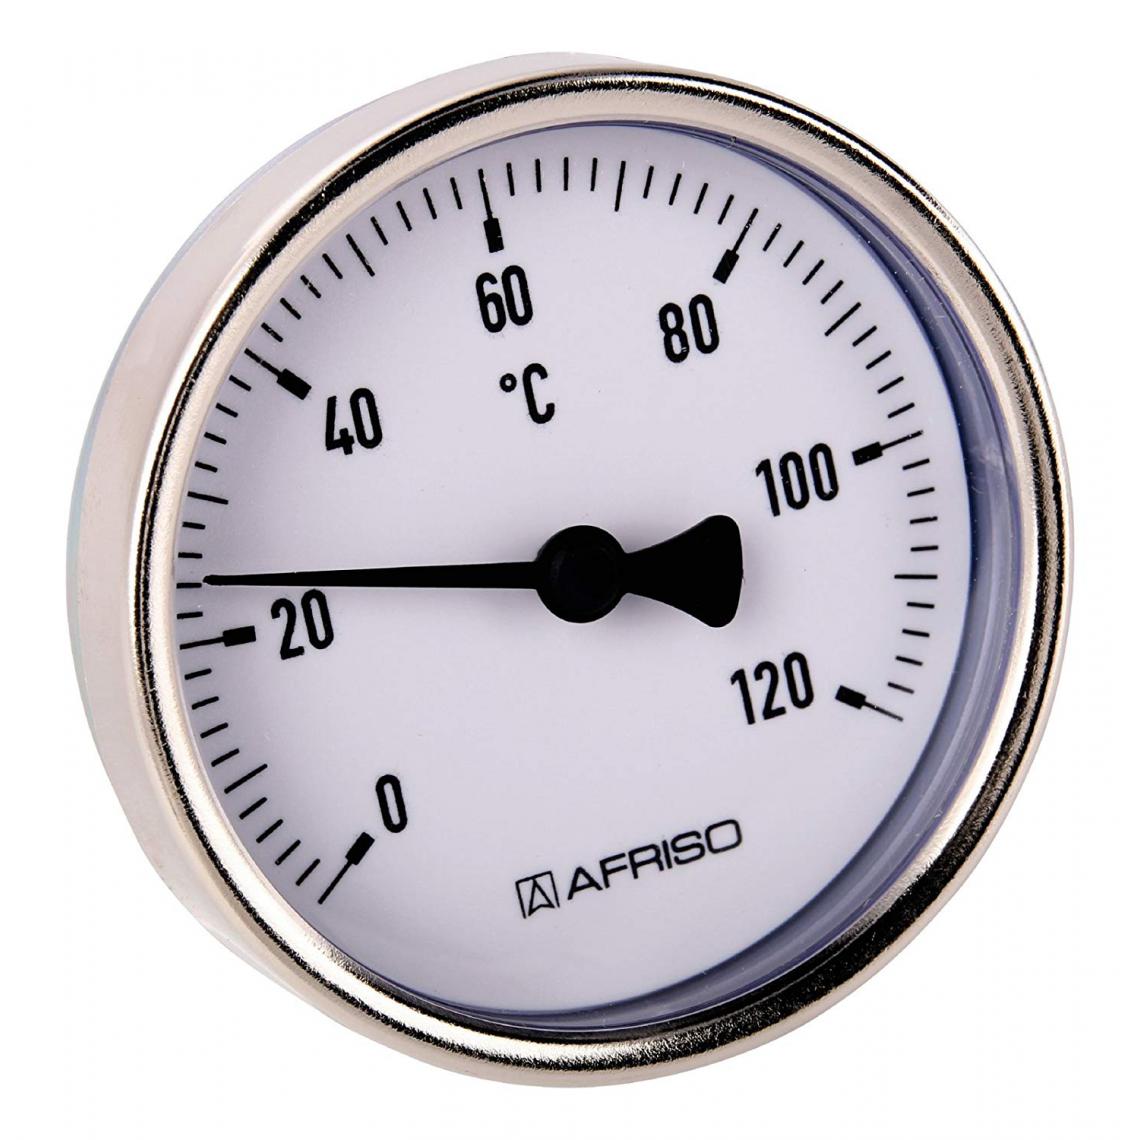 Inconnu - Sanitop-Wingenroth Pointeur Thermomètre bimétallique 120 °C, 1 pièce, 27147 9 - Thermostat